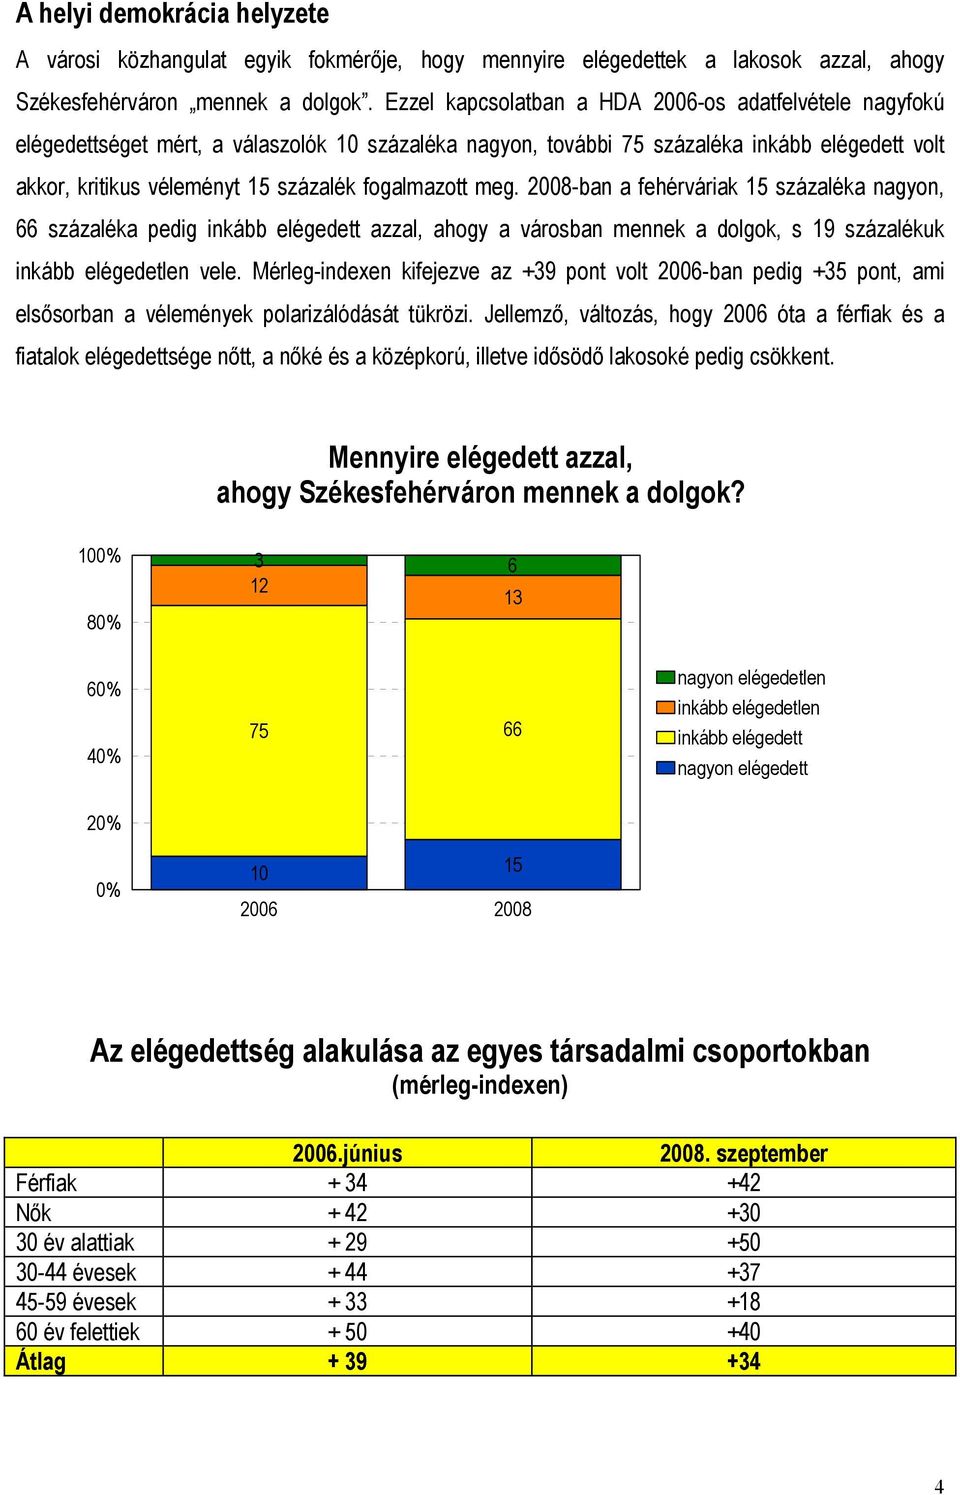 fogalmazott meg. 2008-ban a fehérváriak 15 százaléka nagyon, 66 százaléka pedig inkább elégedett azzal, ahogy a városban mennek a dolgok, s 19 százalékuk inkább elégedetlen vele.